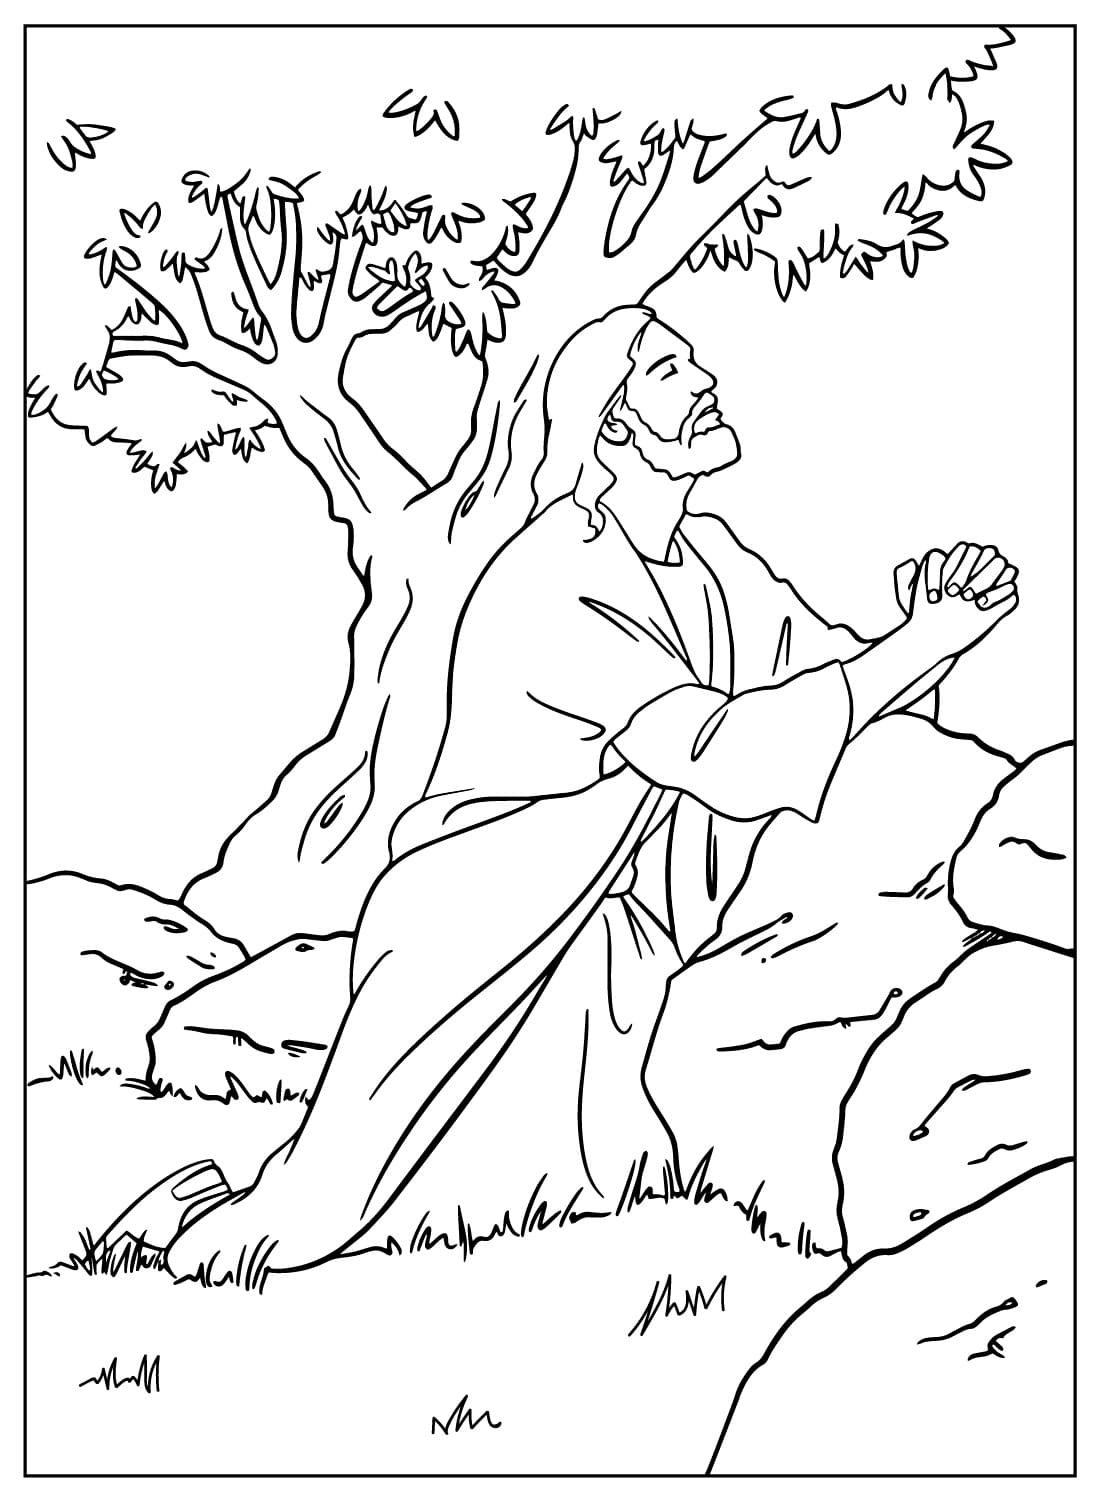 Gesù prega nel giardino del Getsemani da Gesù